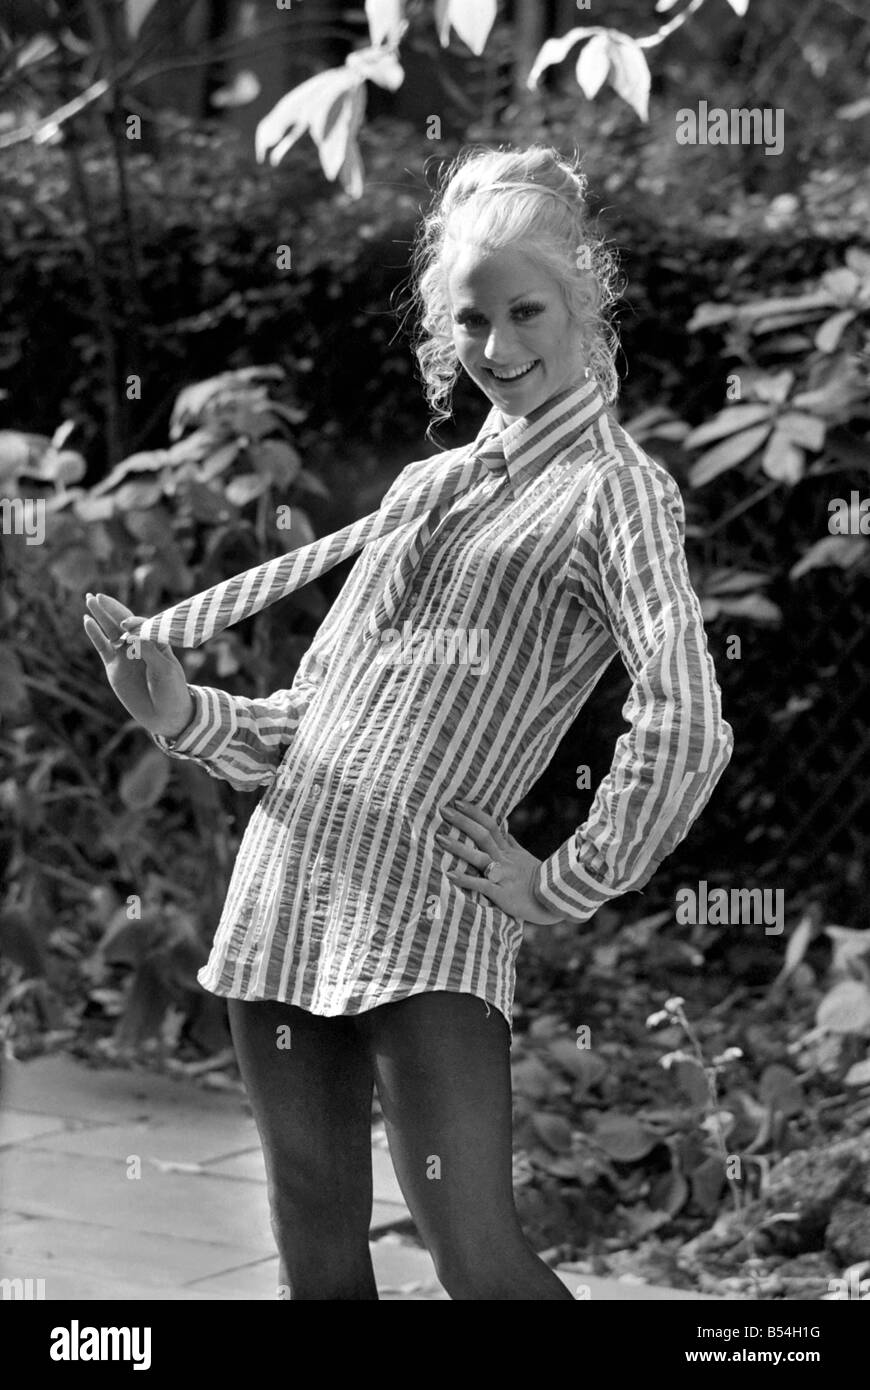 Oggi presso la Casa del Parco, Rutland Gate, London, Felicity Carston mostrava una collezione di uomo Camicie su misura per le donne. Zena Clifton in " Alberta', un verde oliva e bianco seersucker camicia e cravatta corrispondenti,;Ottobre 1969 ;Z10426-001 Foto Stock